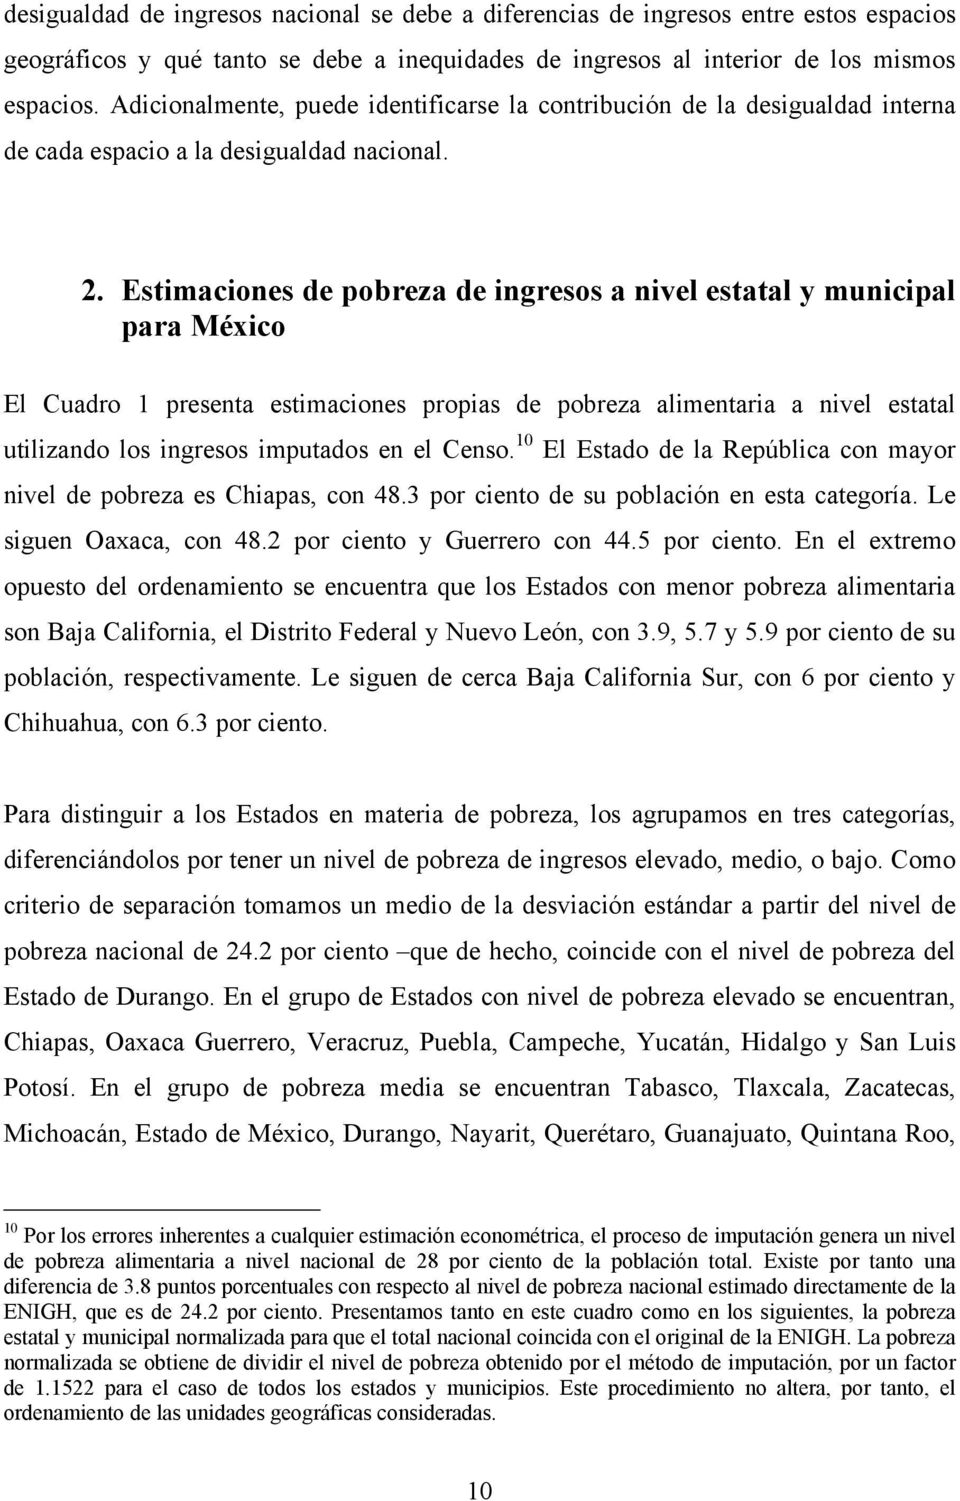 Estimaciones de pobreza de ingresos a nivel estatal y municipal para México El Cuadro 1 presenta estimaciones propias de pobreza alimentaria a nivel estatal utilizando los ingresos imputados en el